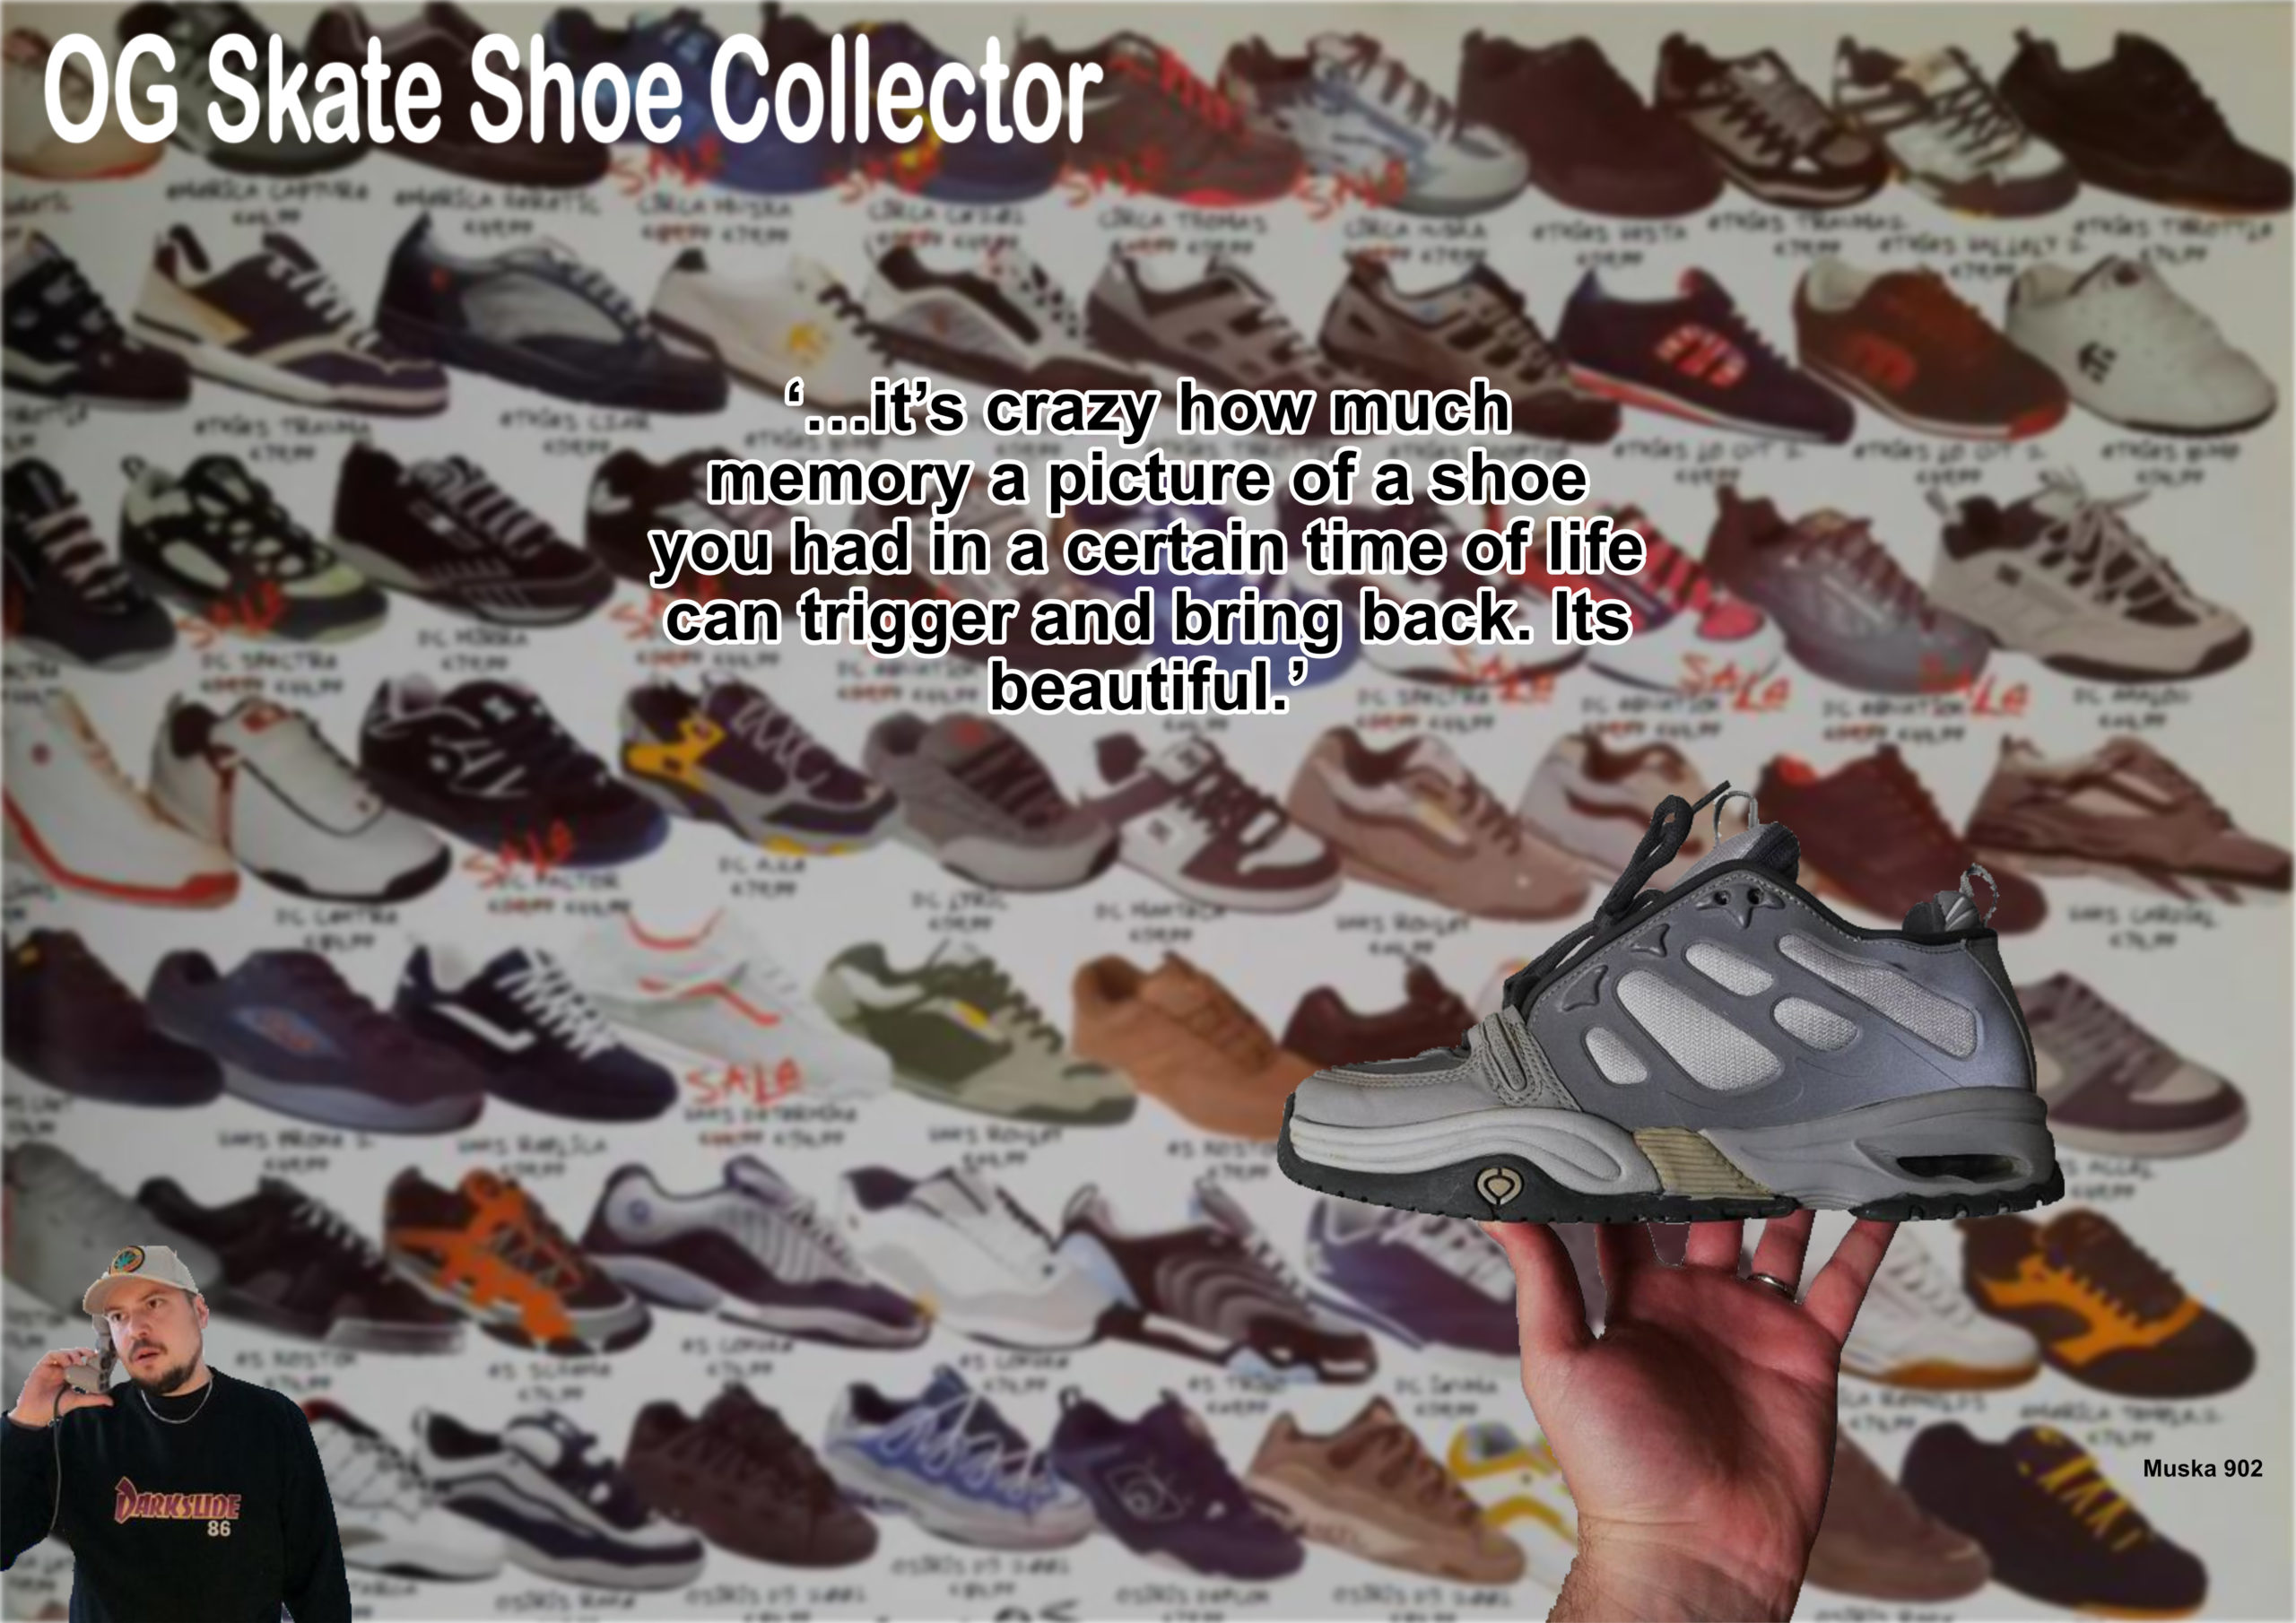 OG Skate Shoe Collector